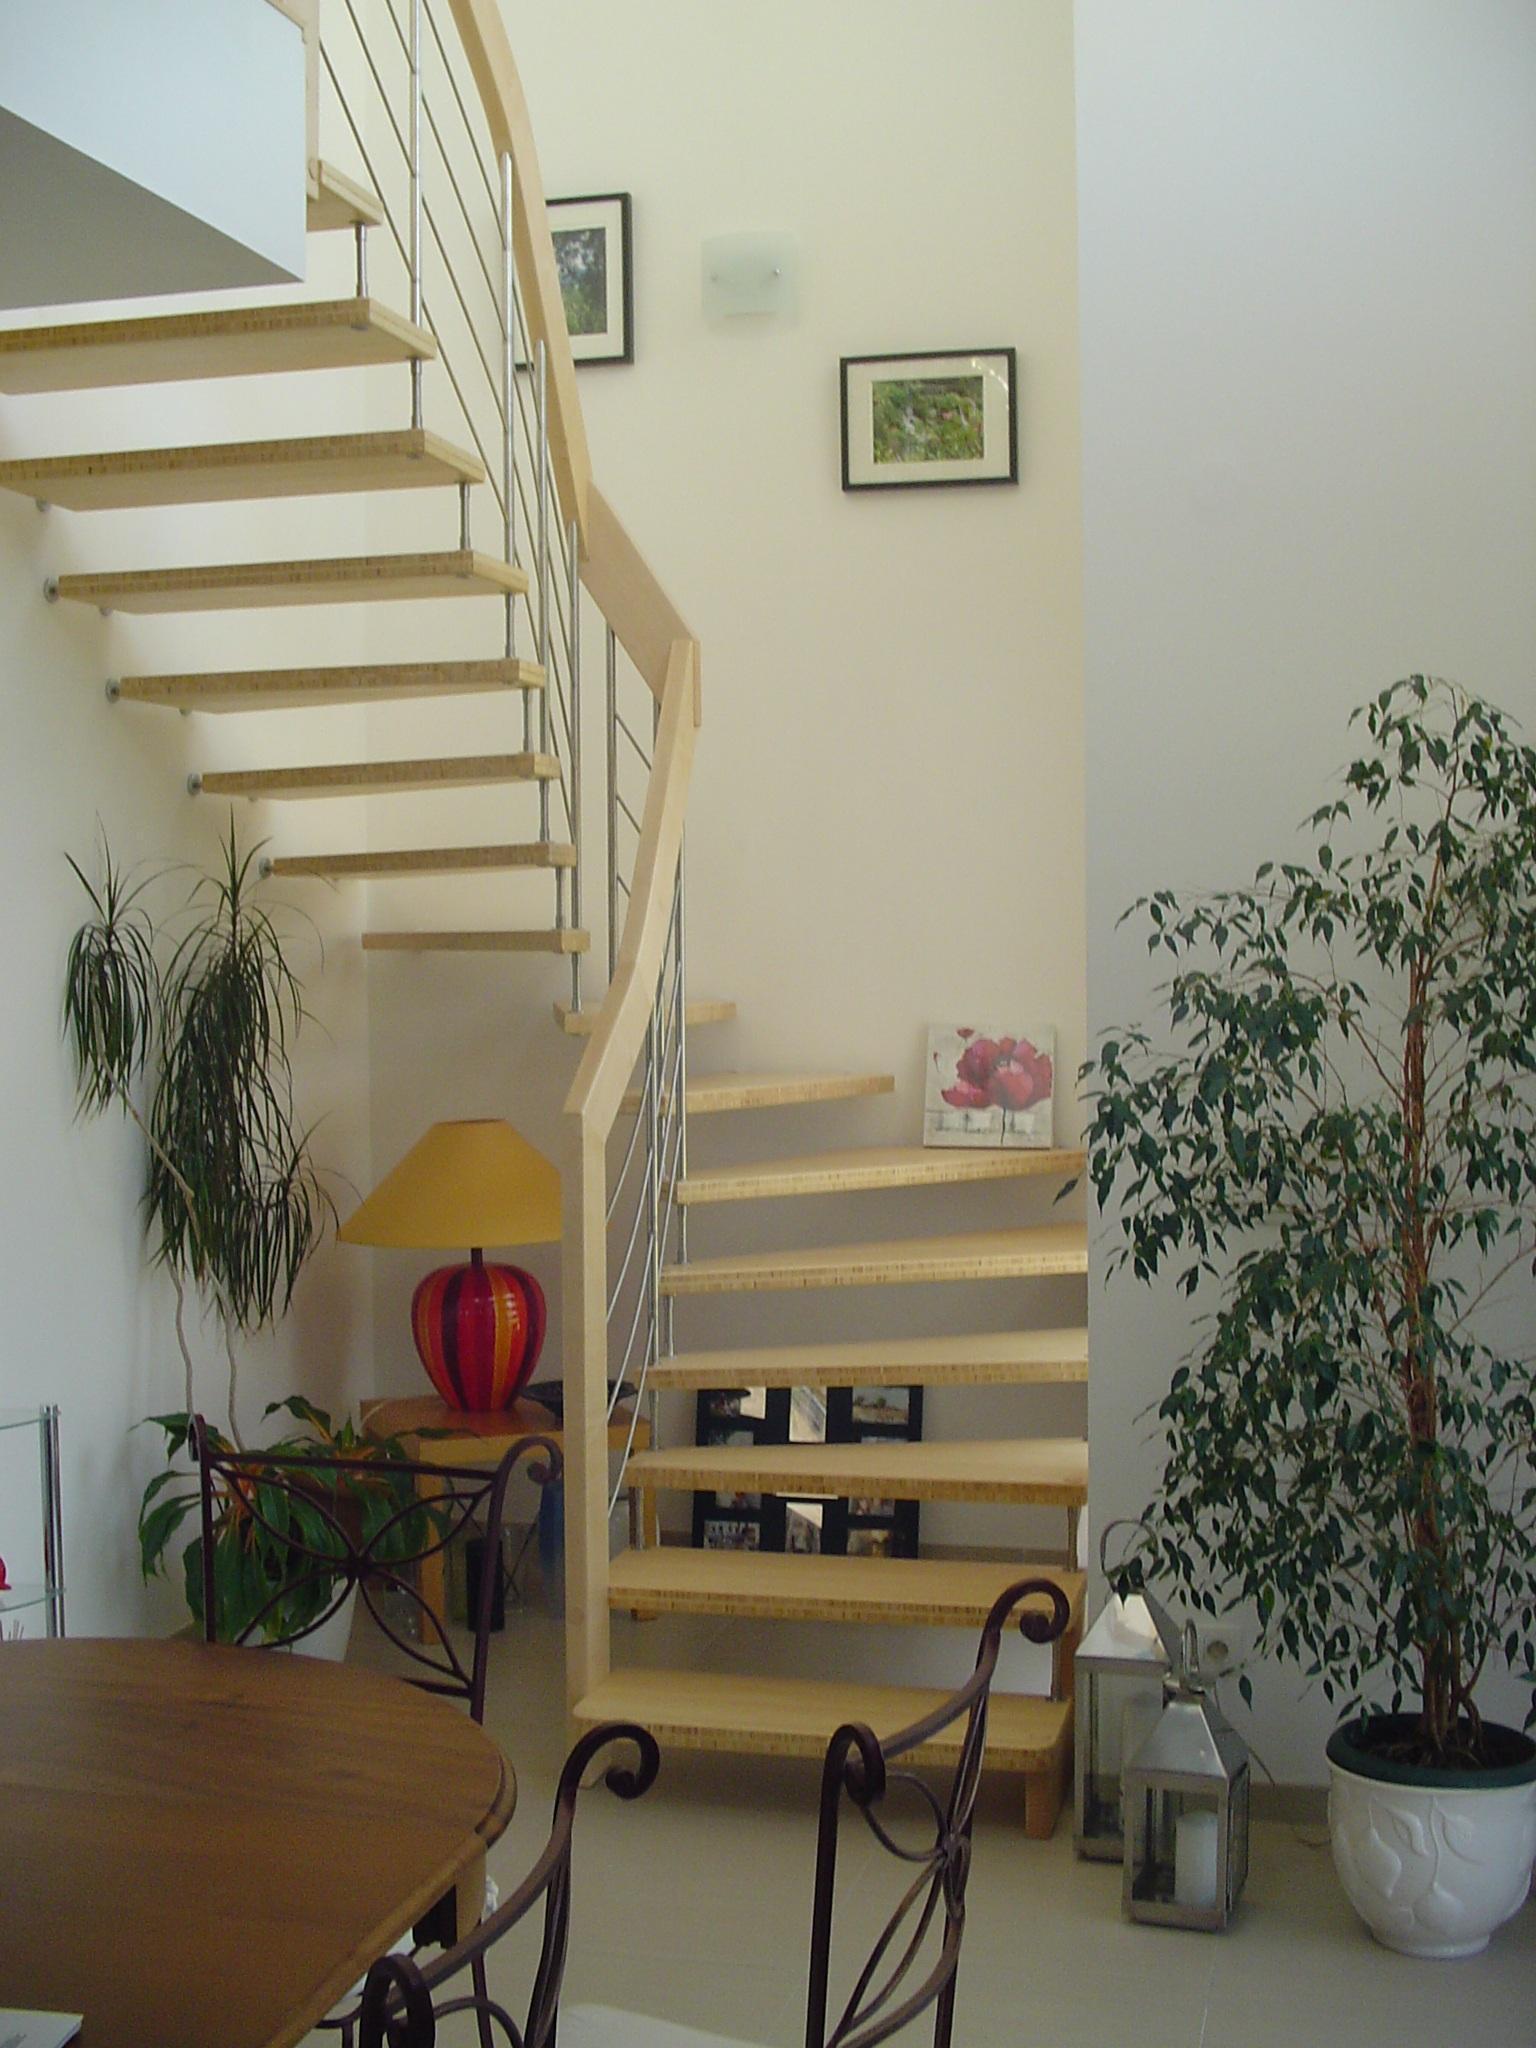 Maison individuelle - Escalier autoportant et la fente de ventilation